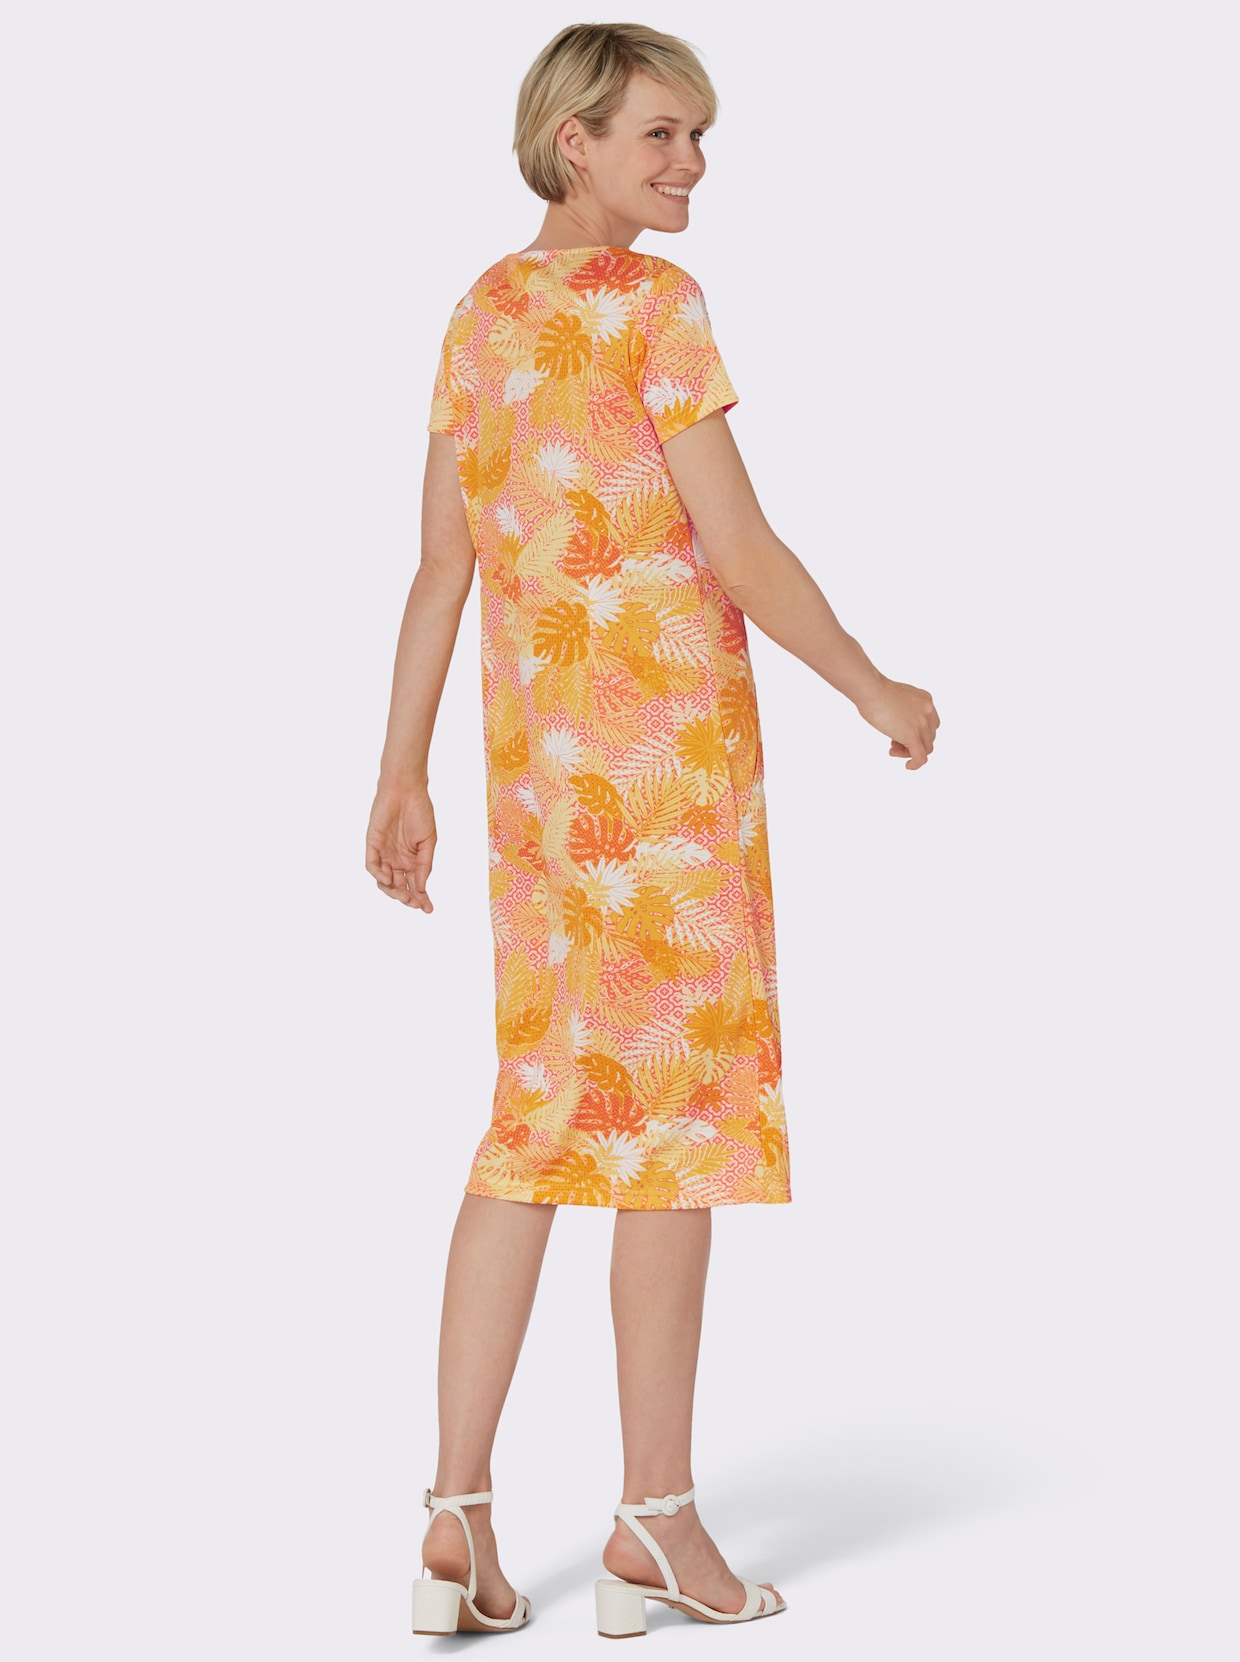 Trikåklänning - gul-orange, med tryck